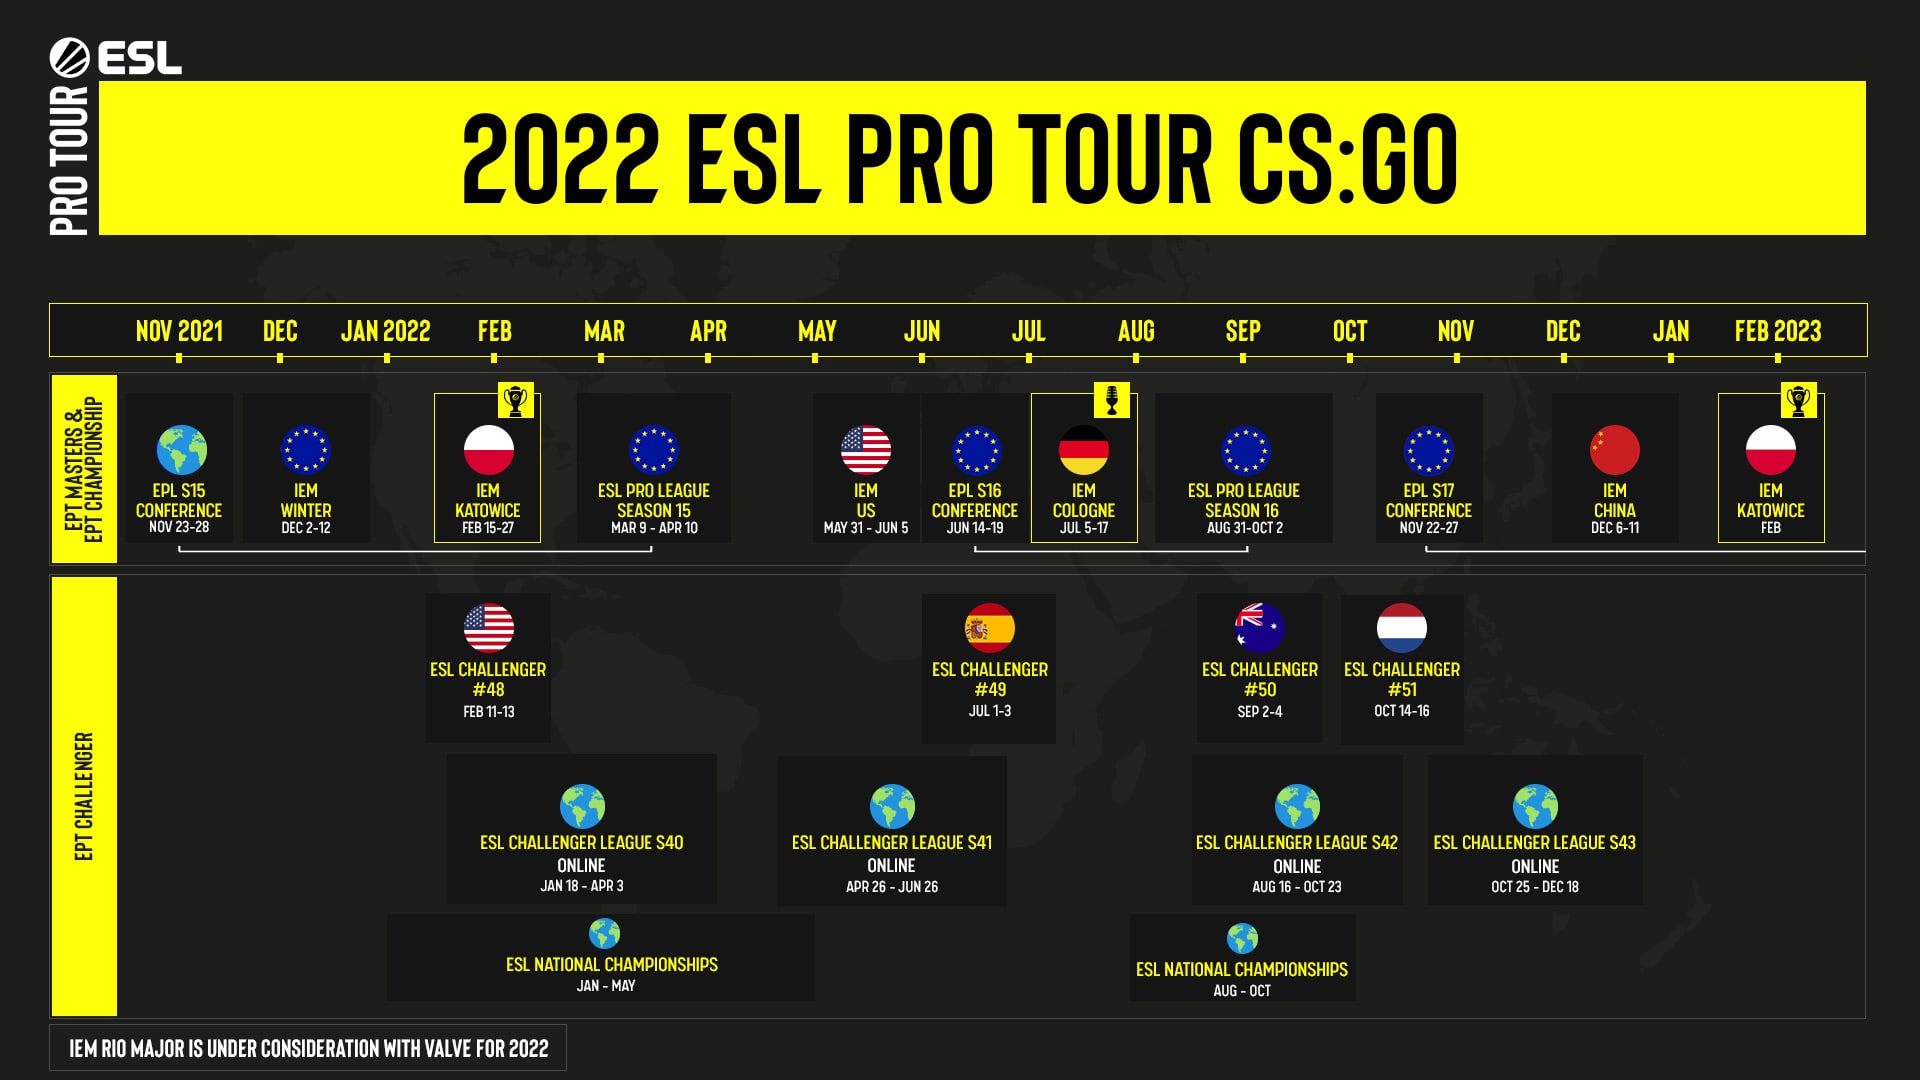 Esports Calendar 2022 Unveiling Our 2022 Esl Pro Tour For Cs:go | Esl Gaming